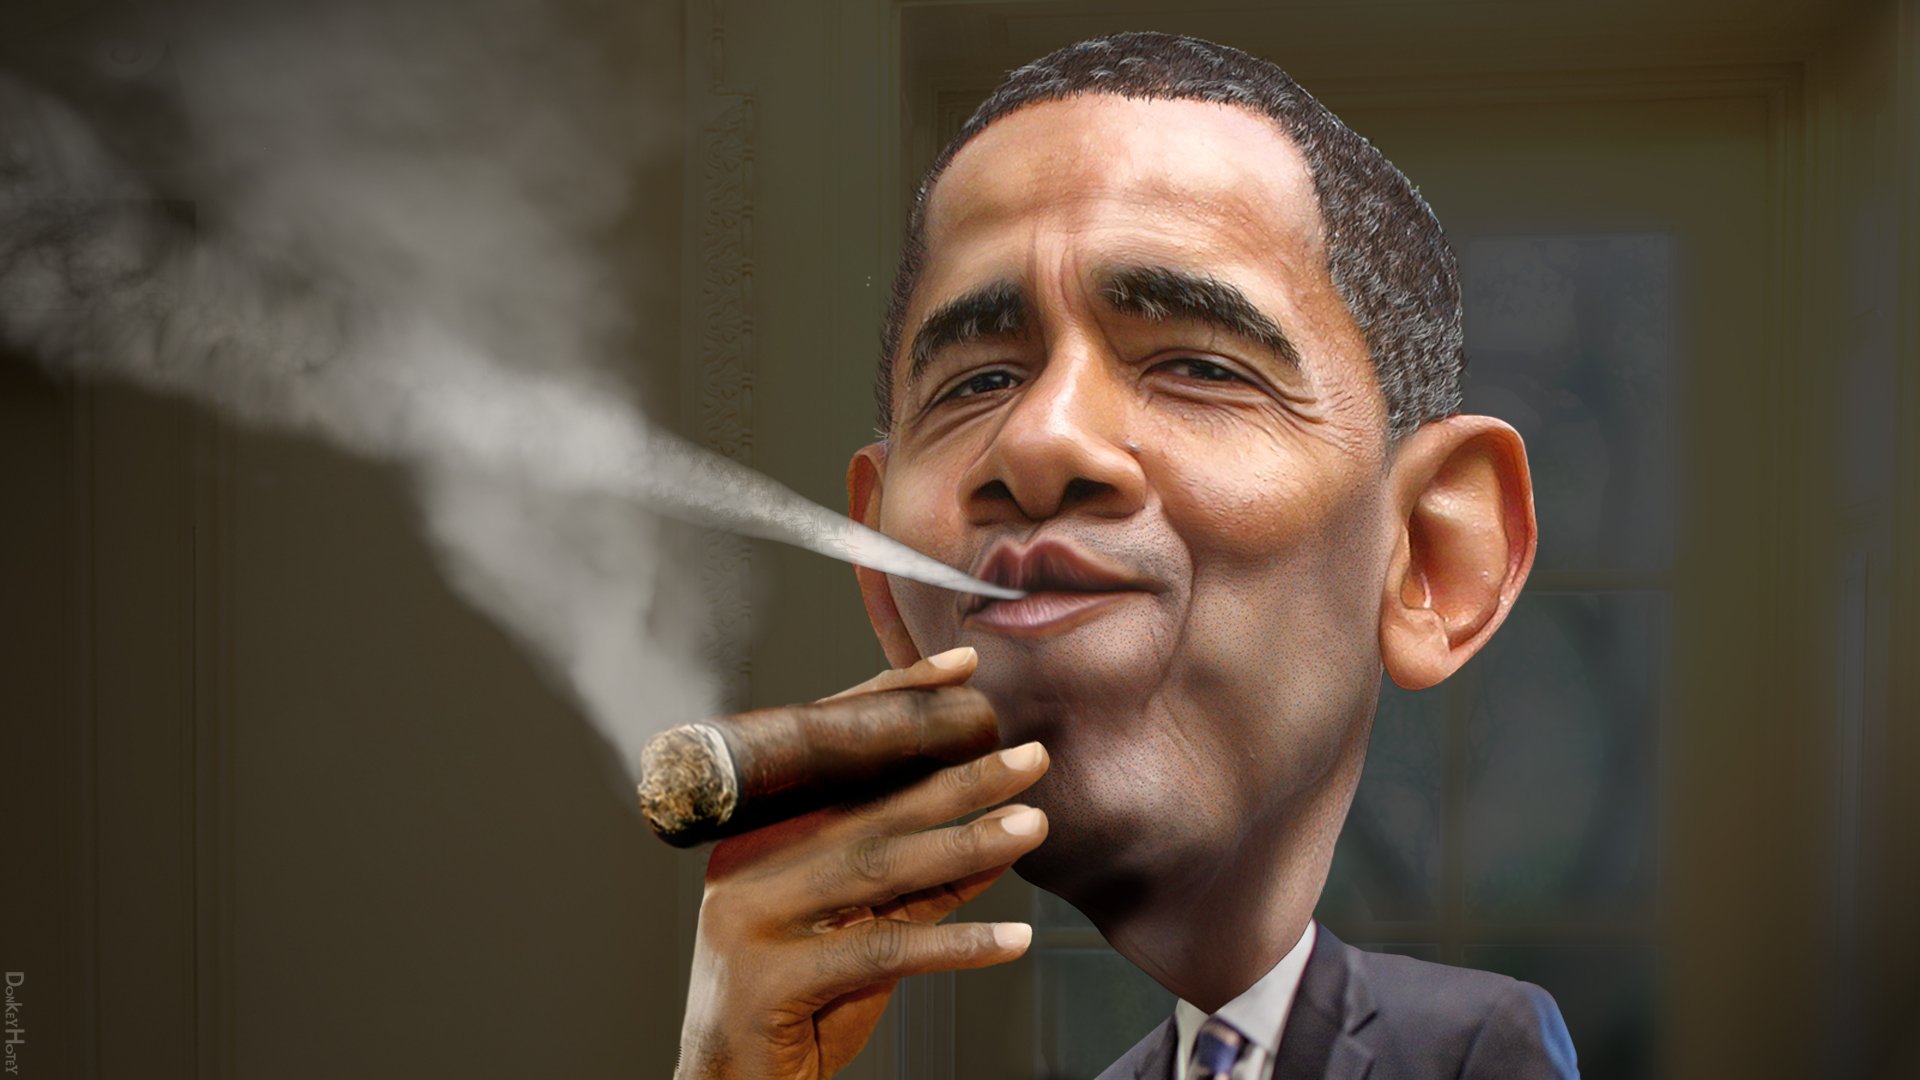 Barack_Obama_Enjoying_a_Cuban_1920x1080.jpg